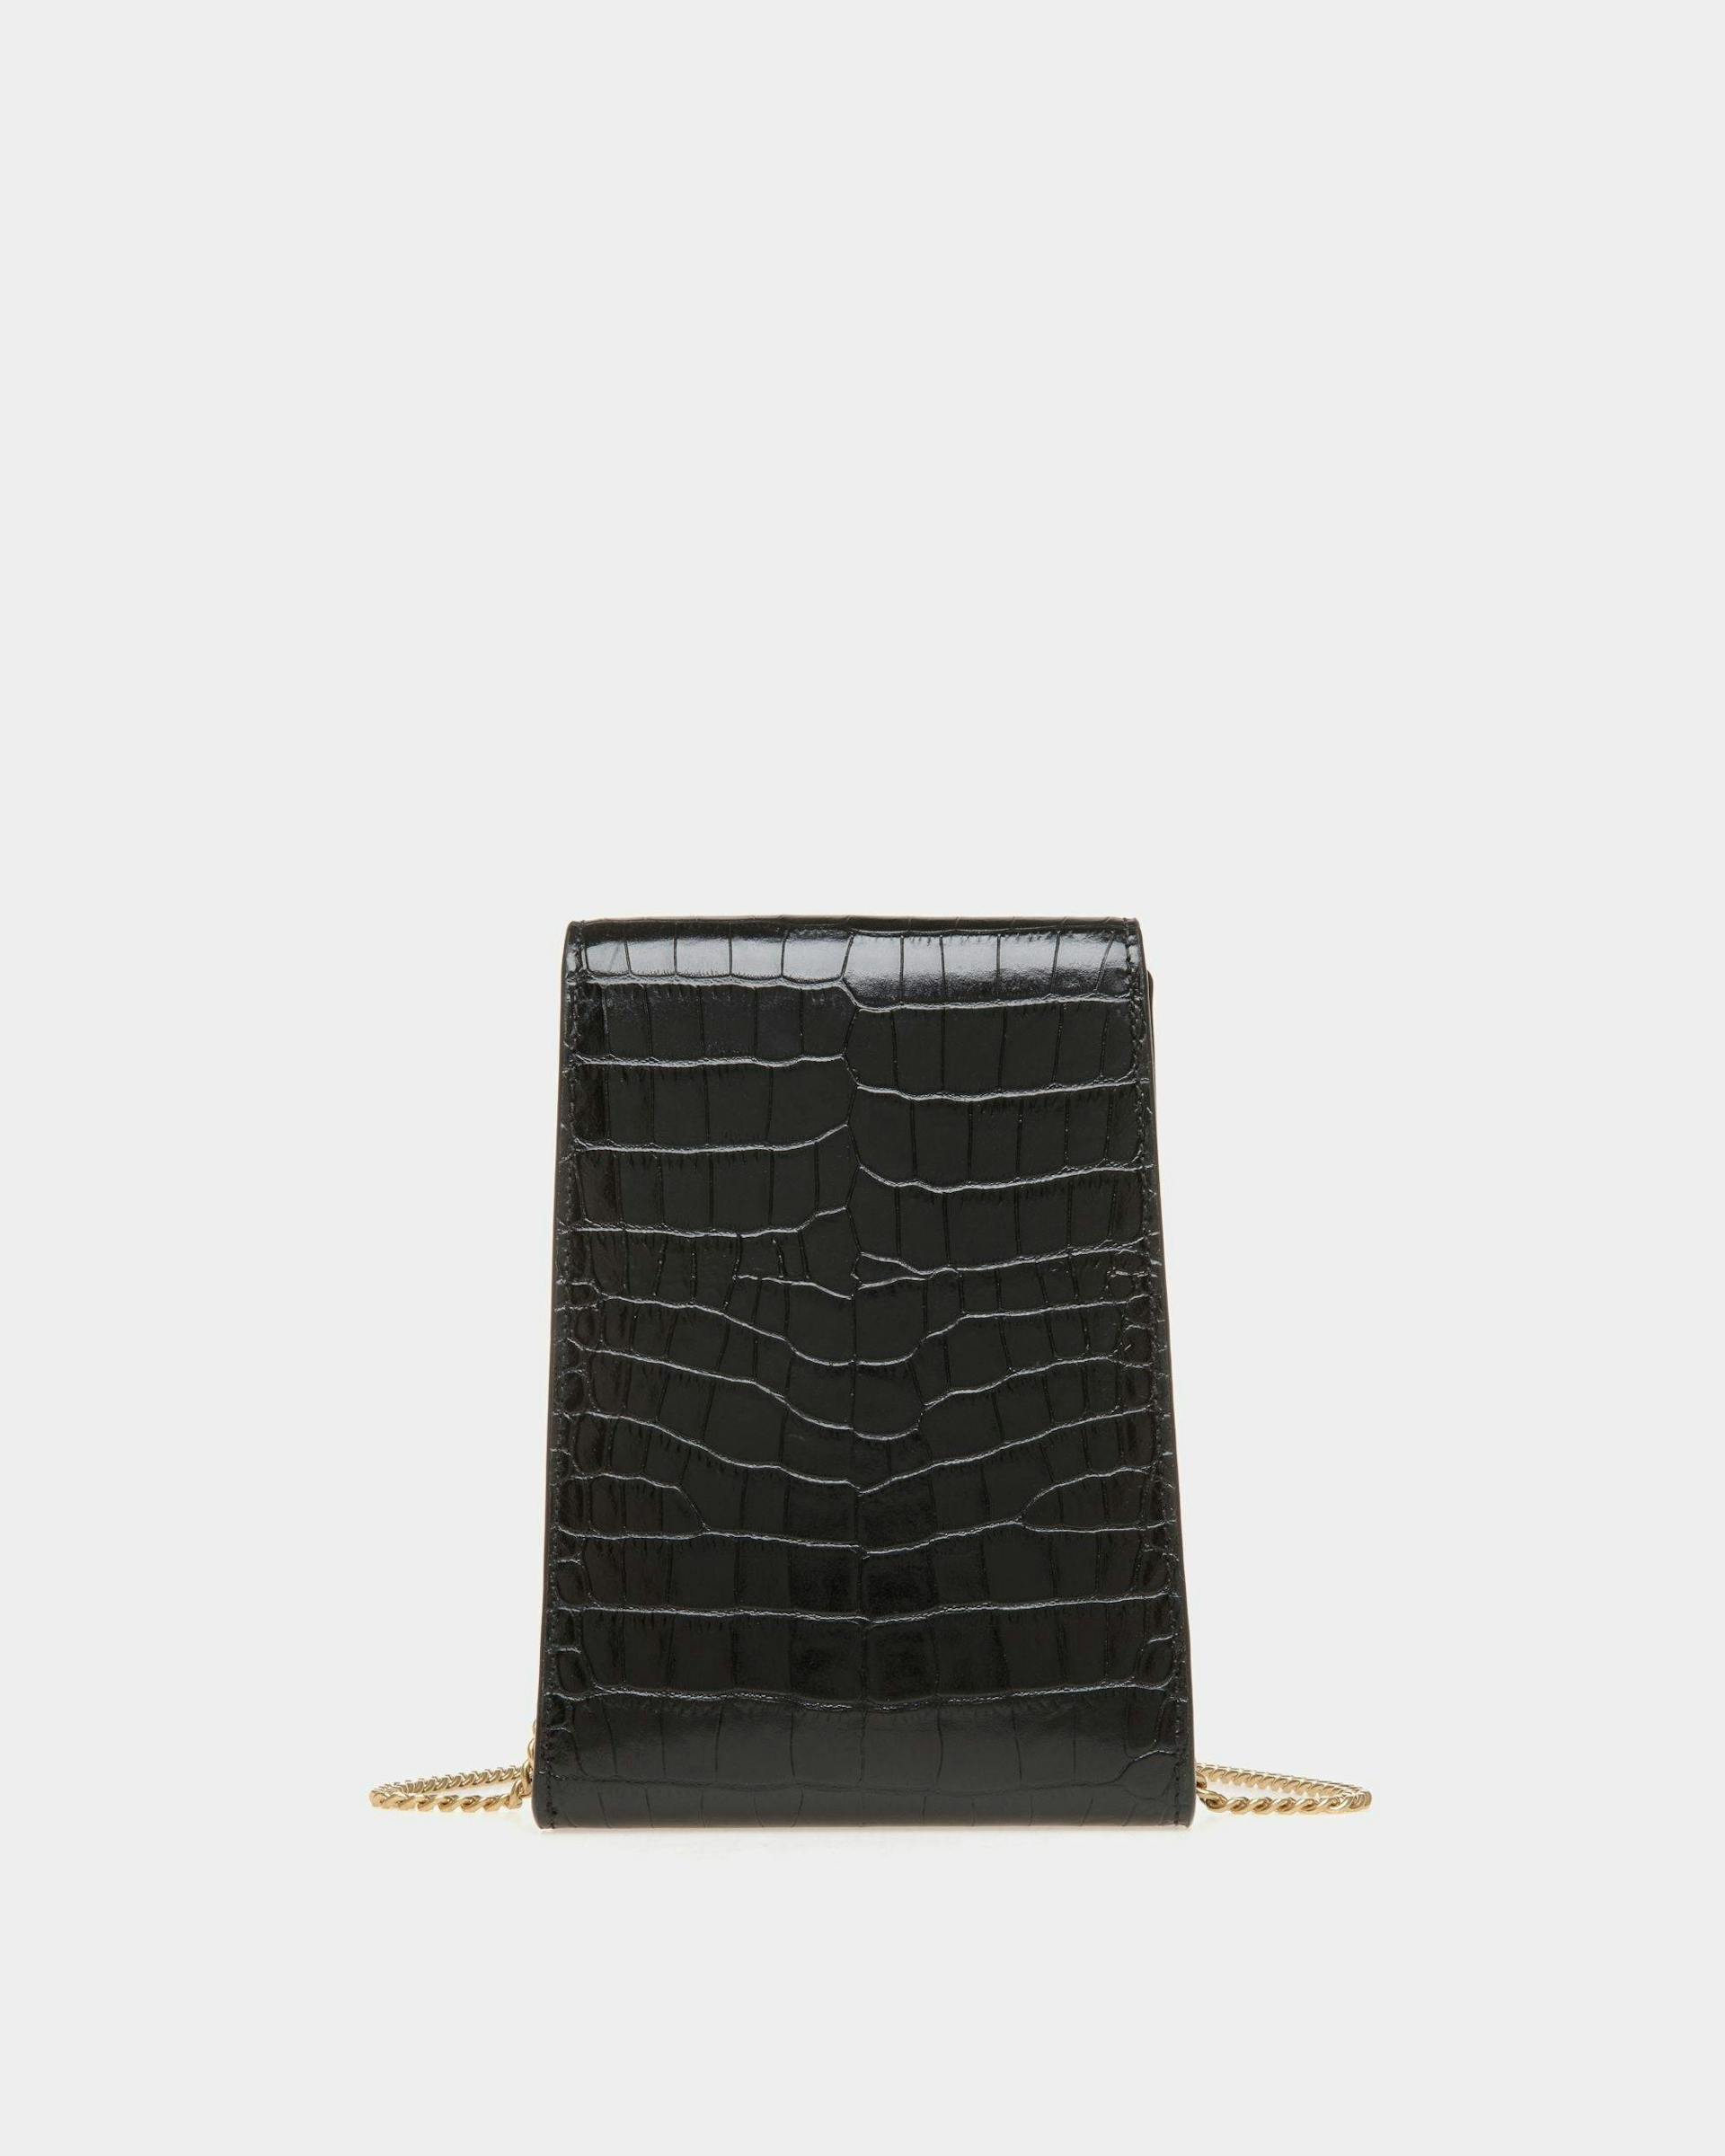 Women's Tilt Phone Bag in Black Crocodile Print Leather | Bally | Still Life Back